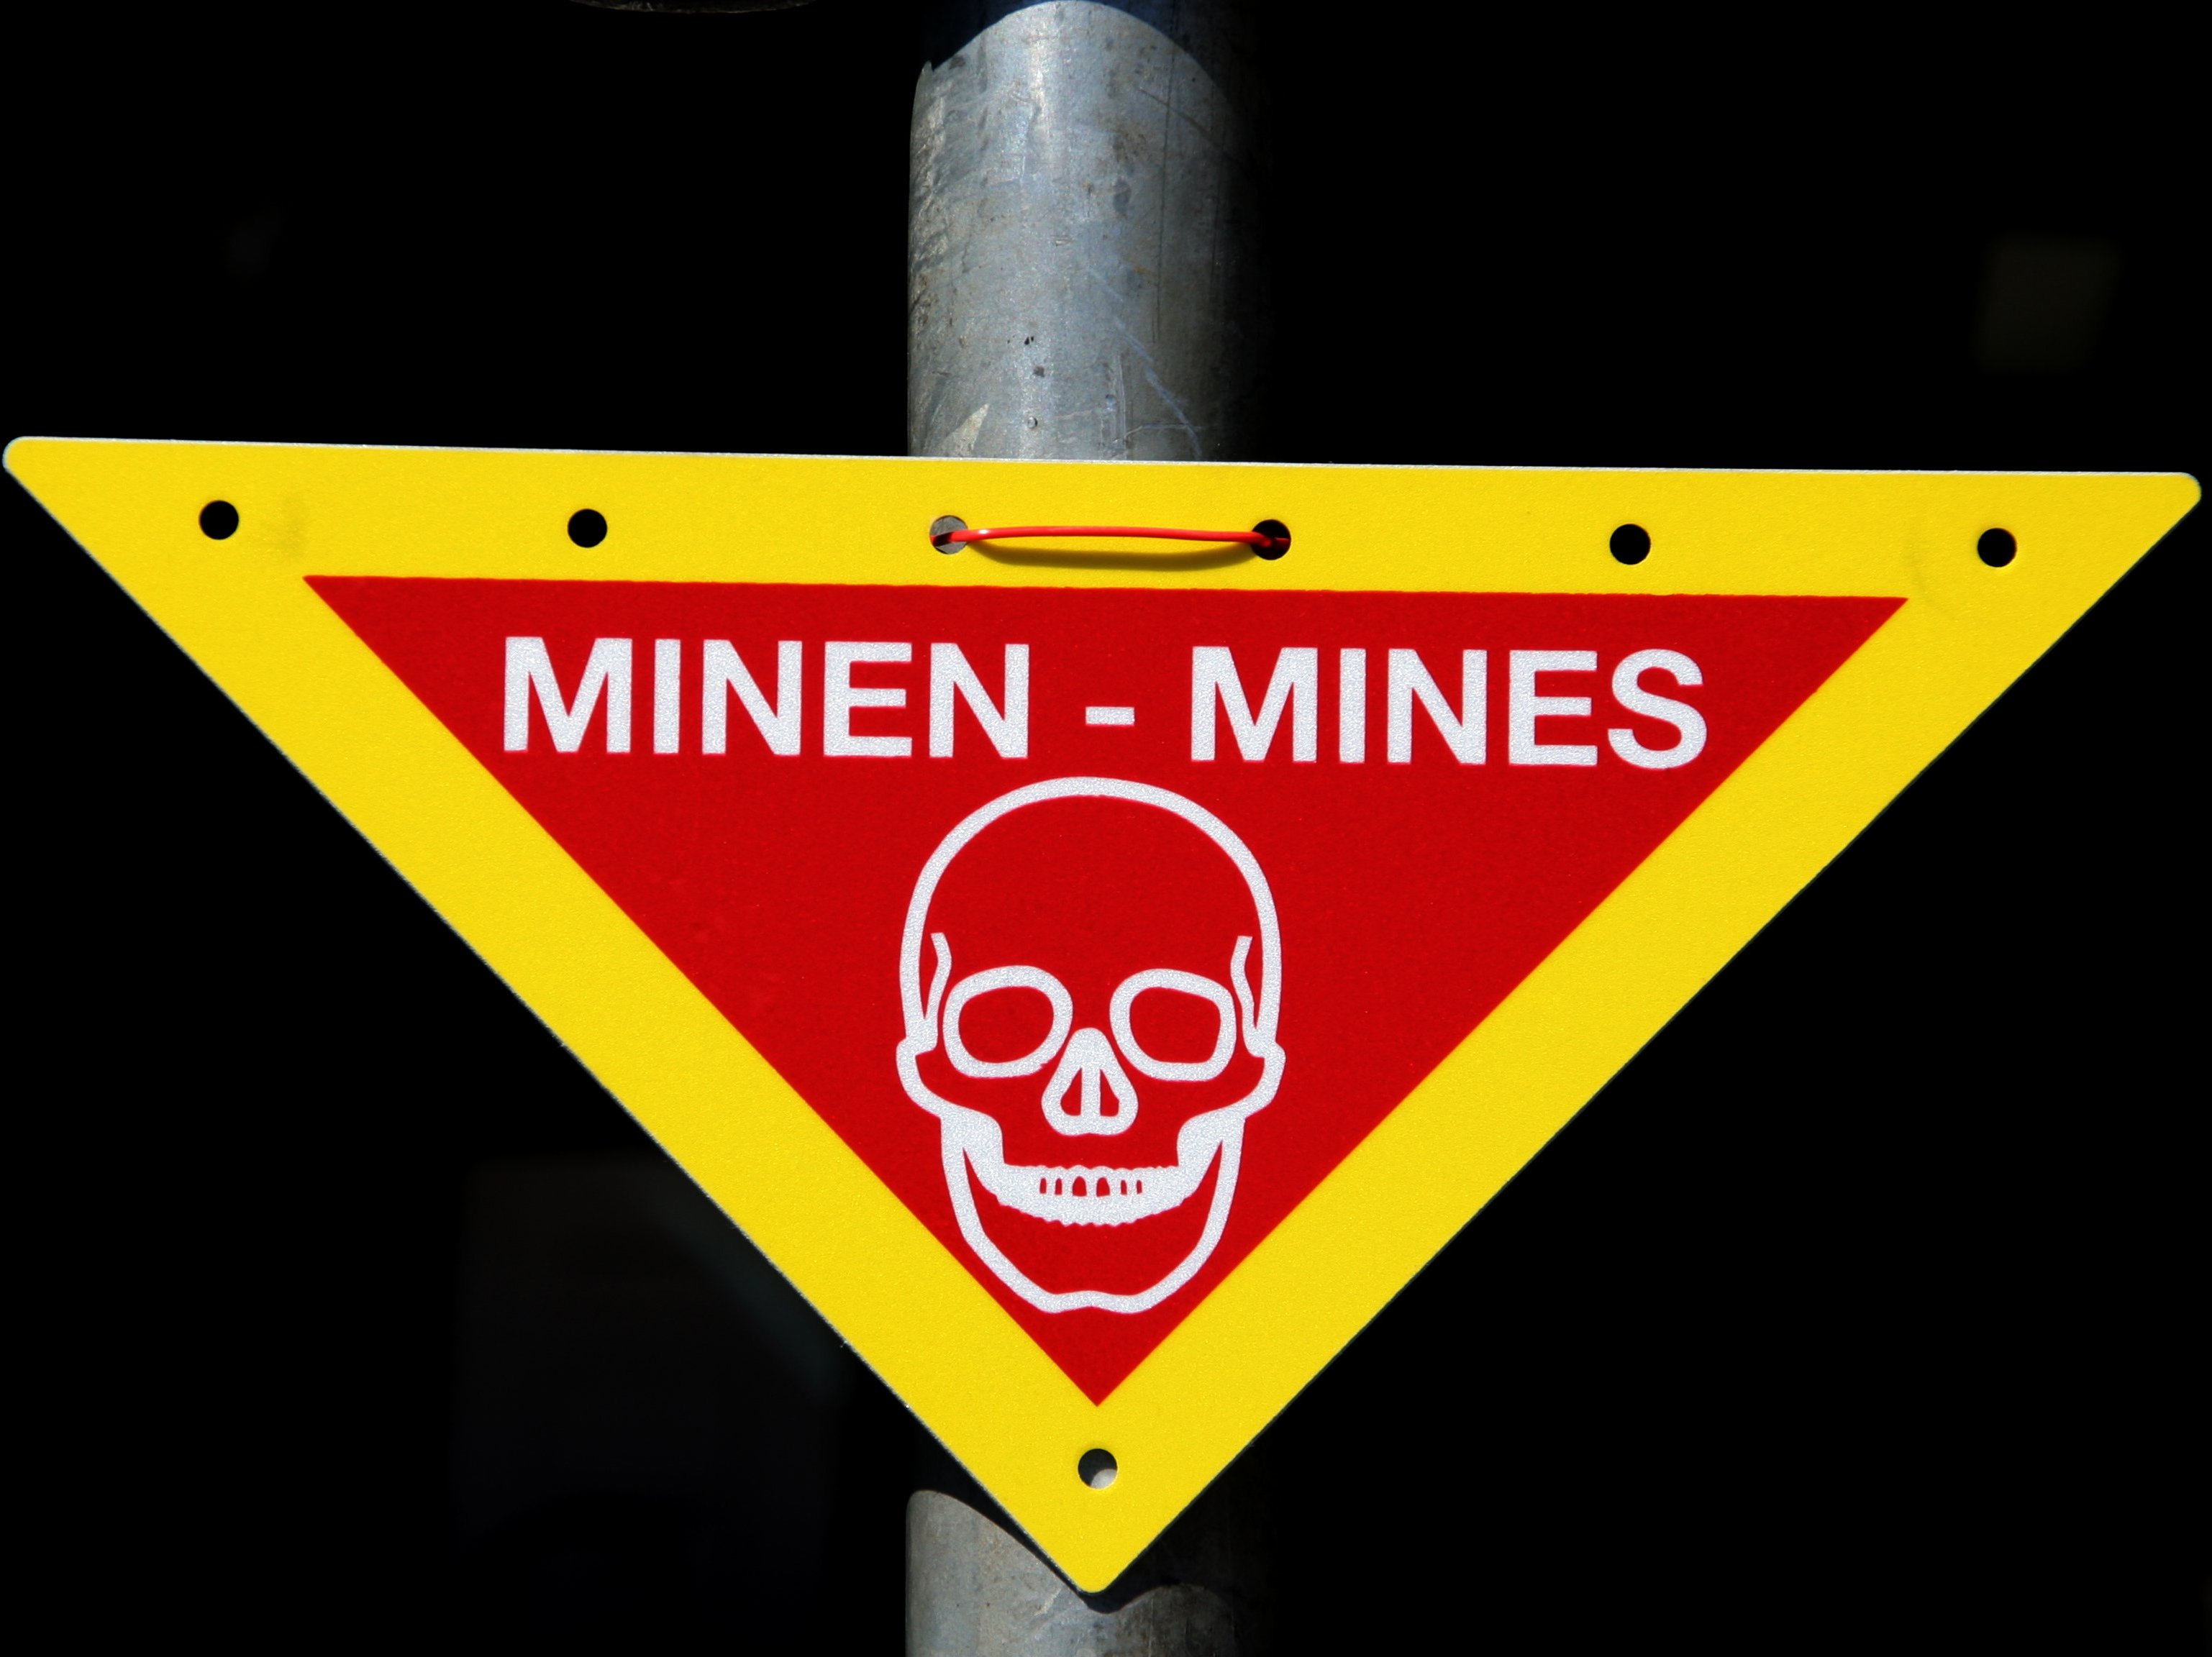 Mines warning sign.jpg